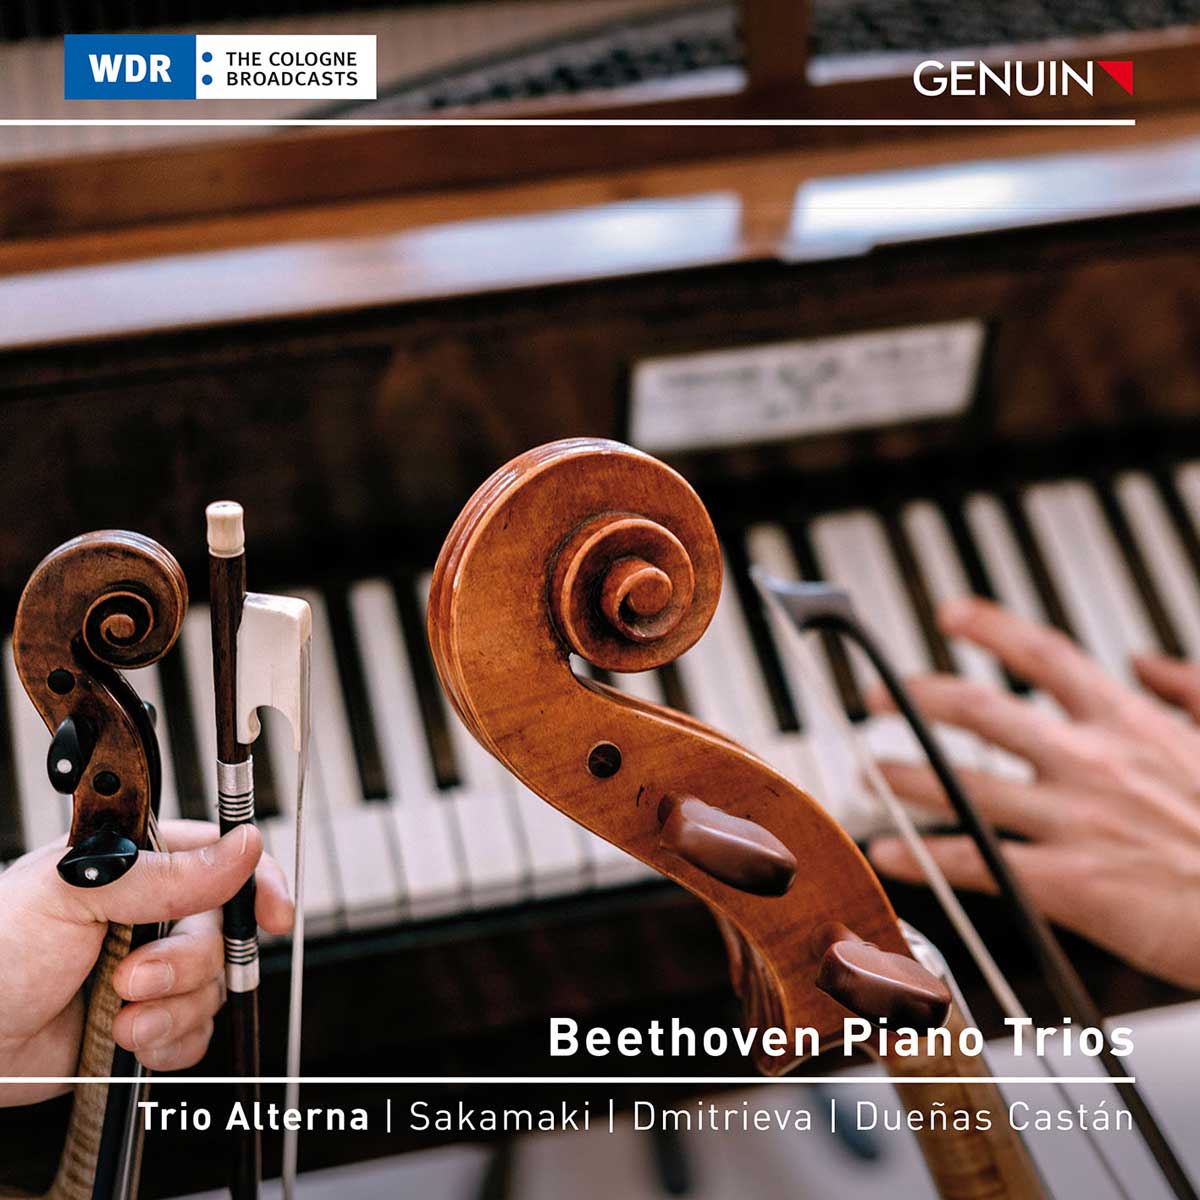 CD album cover 'Beethoven Piano Trios' (GEN 23806) with Trio Alterna